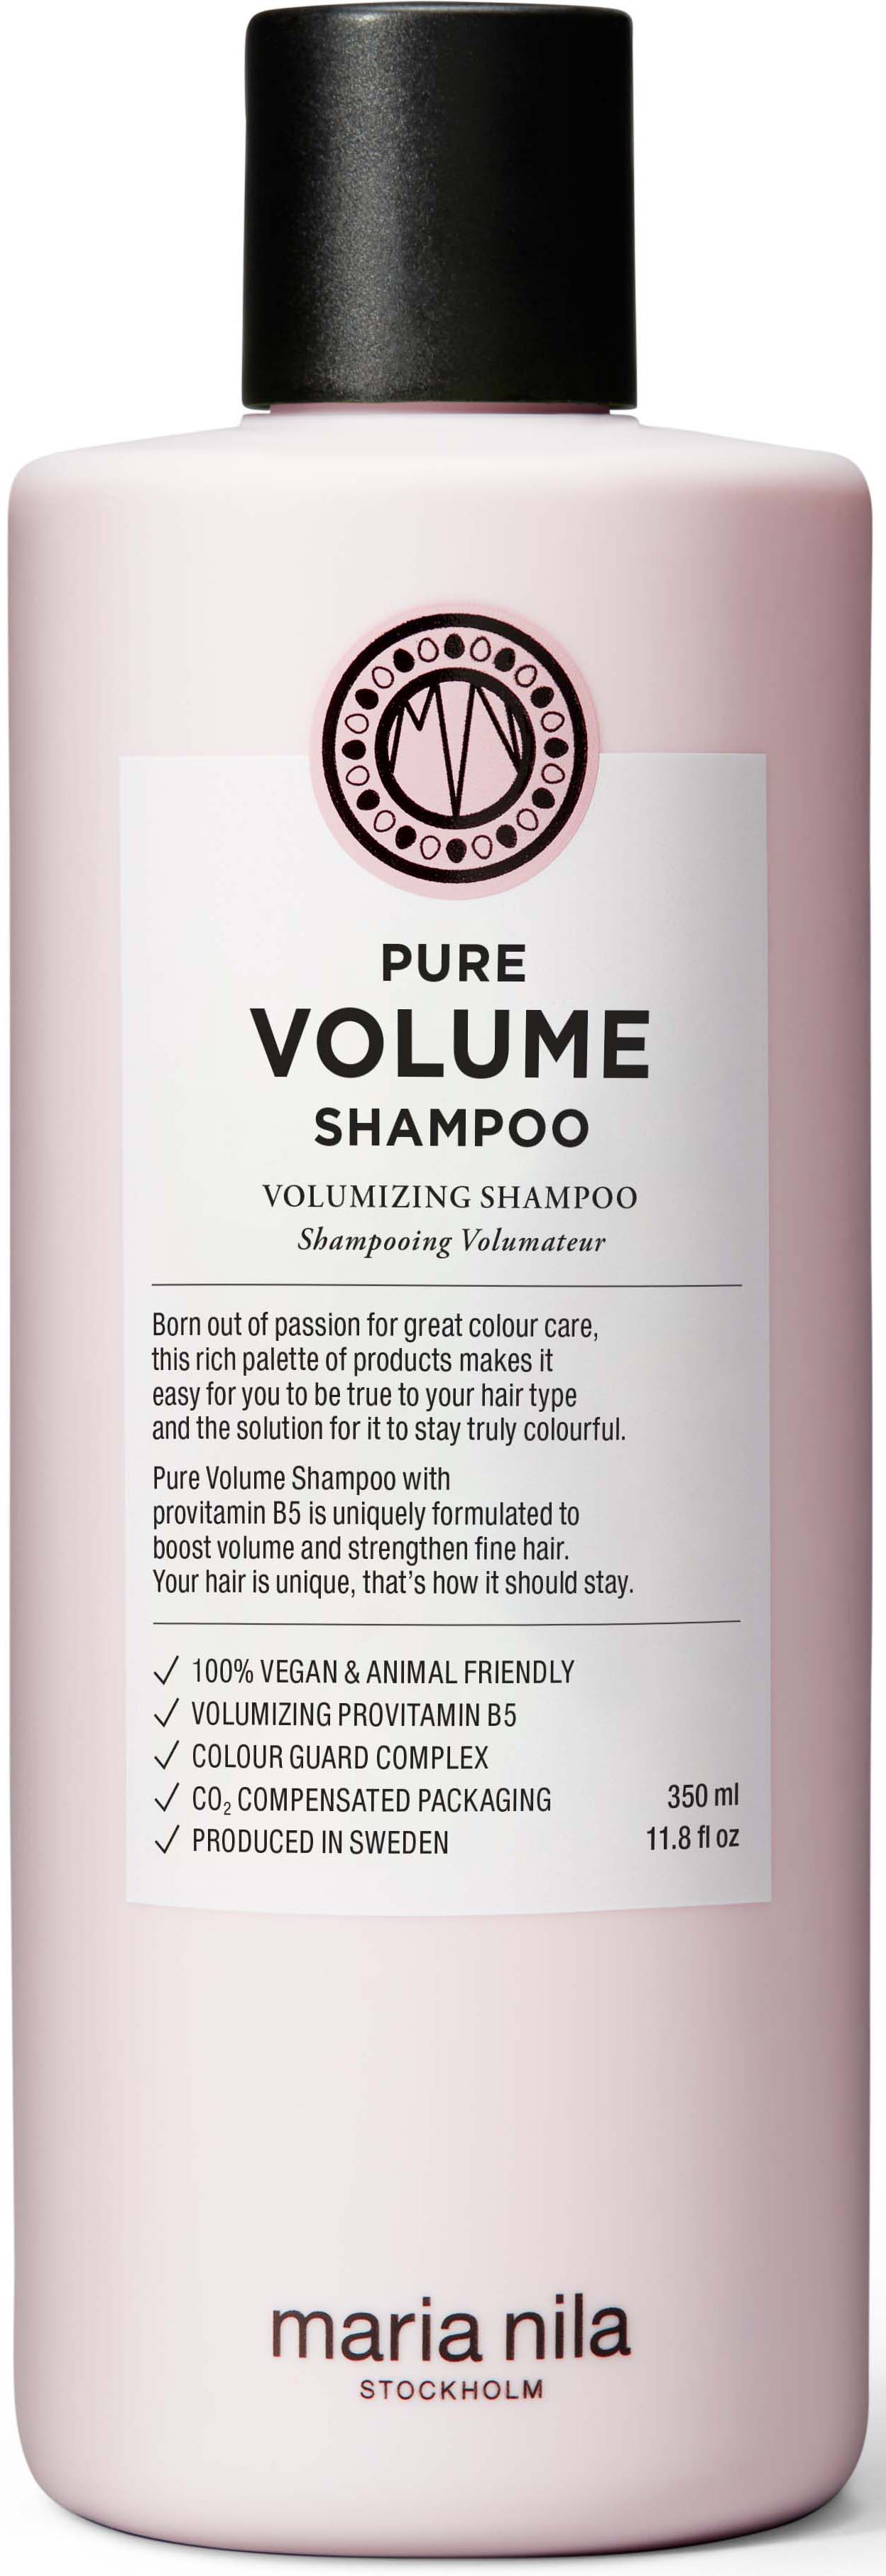 Maria Nila Palett Shampoo Pure Volume